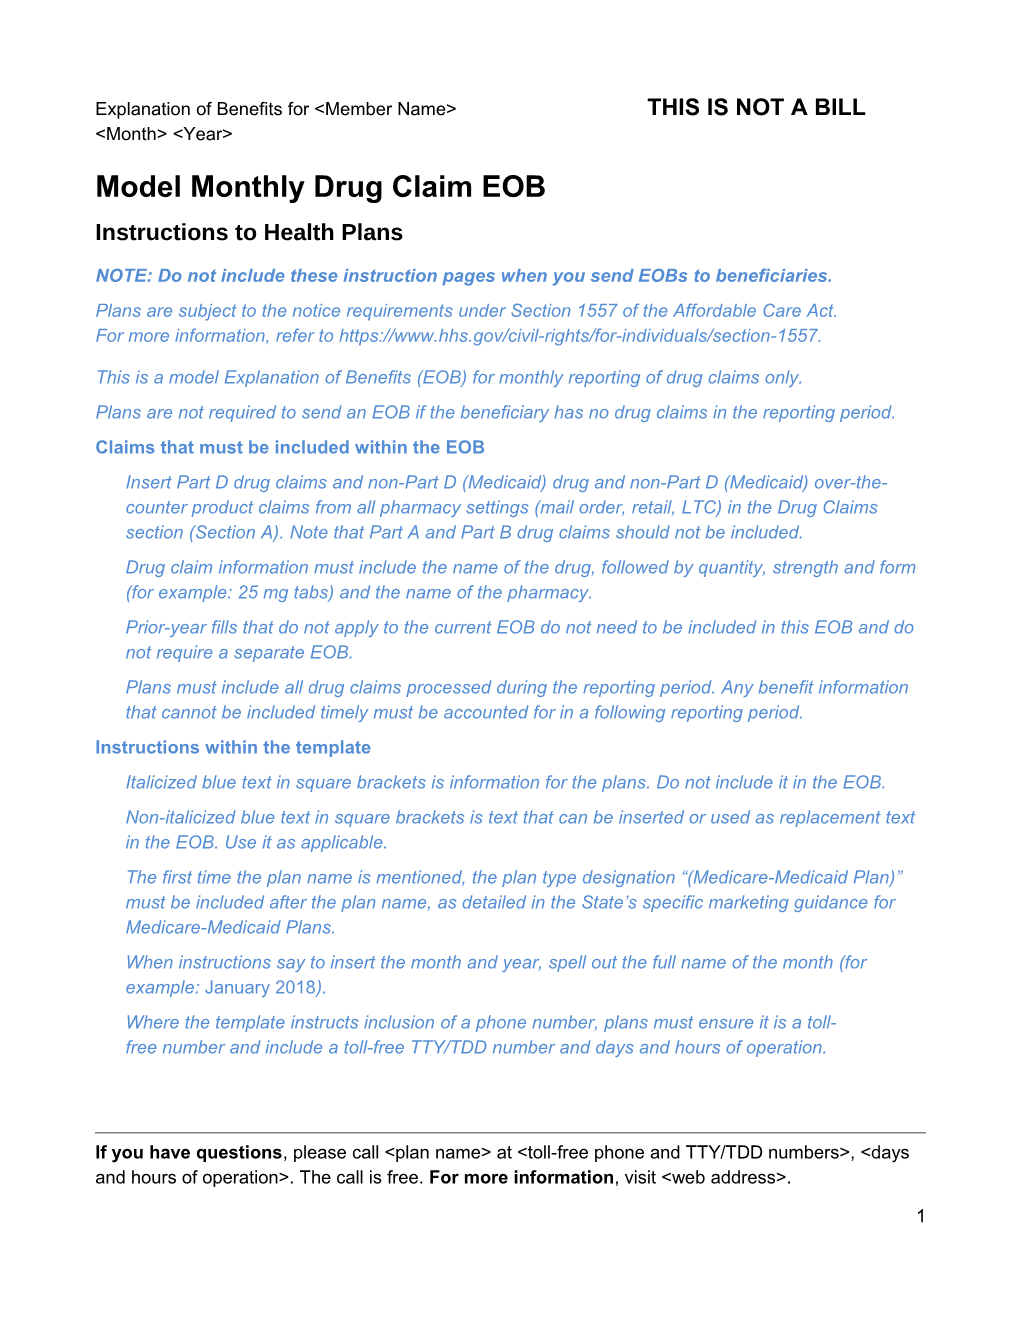 Model MMP Drug Claim Explanation of Benefits